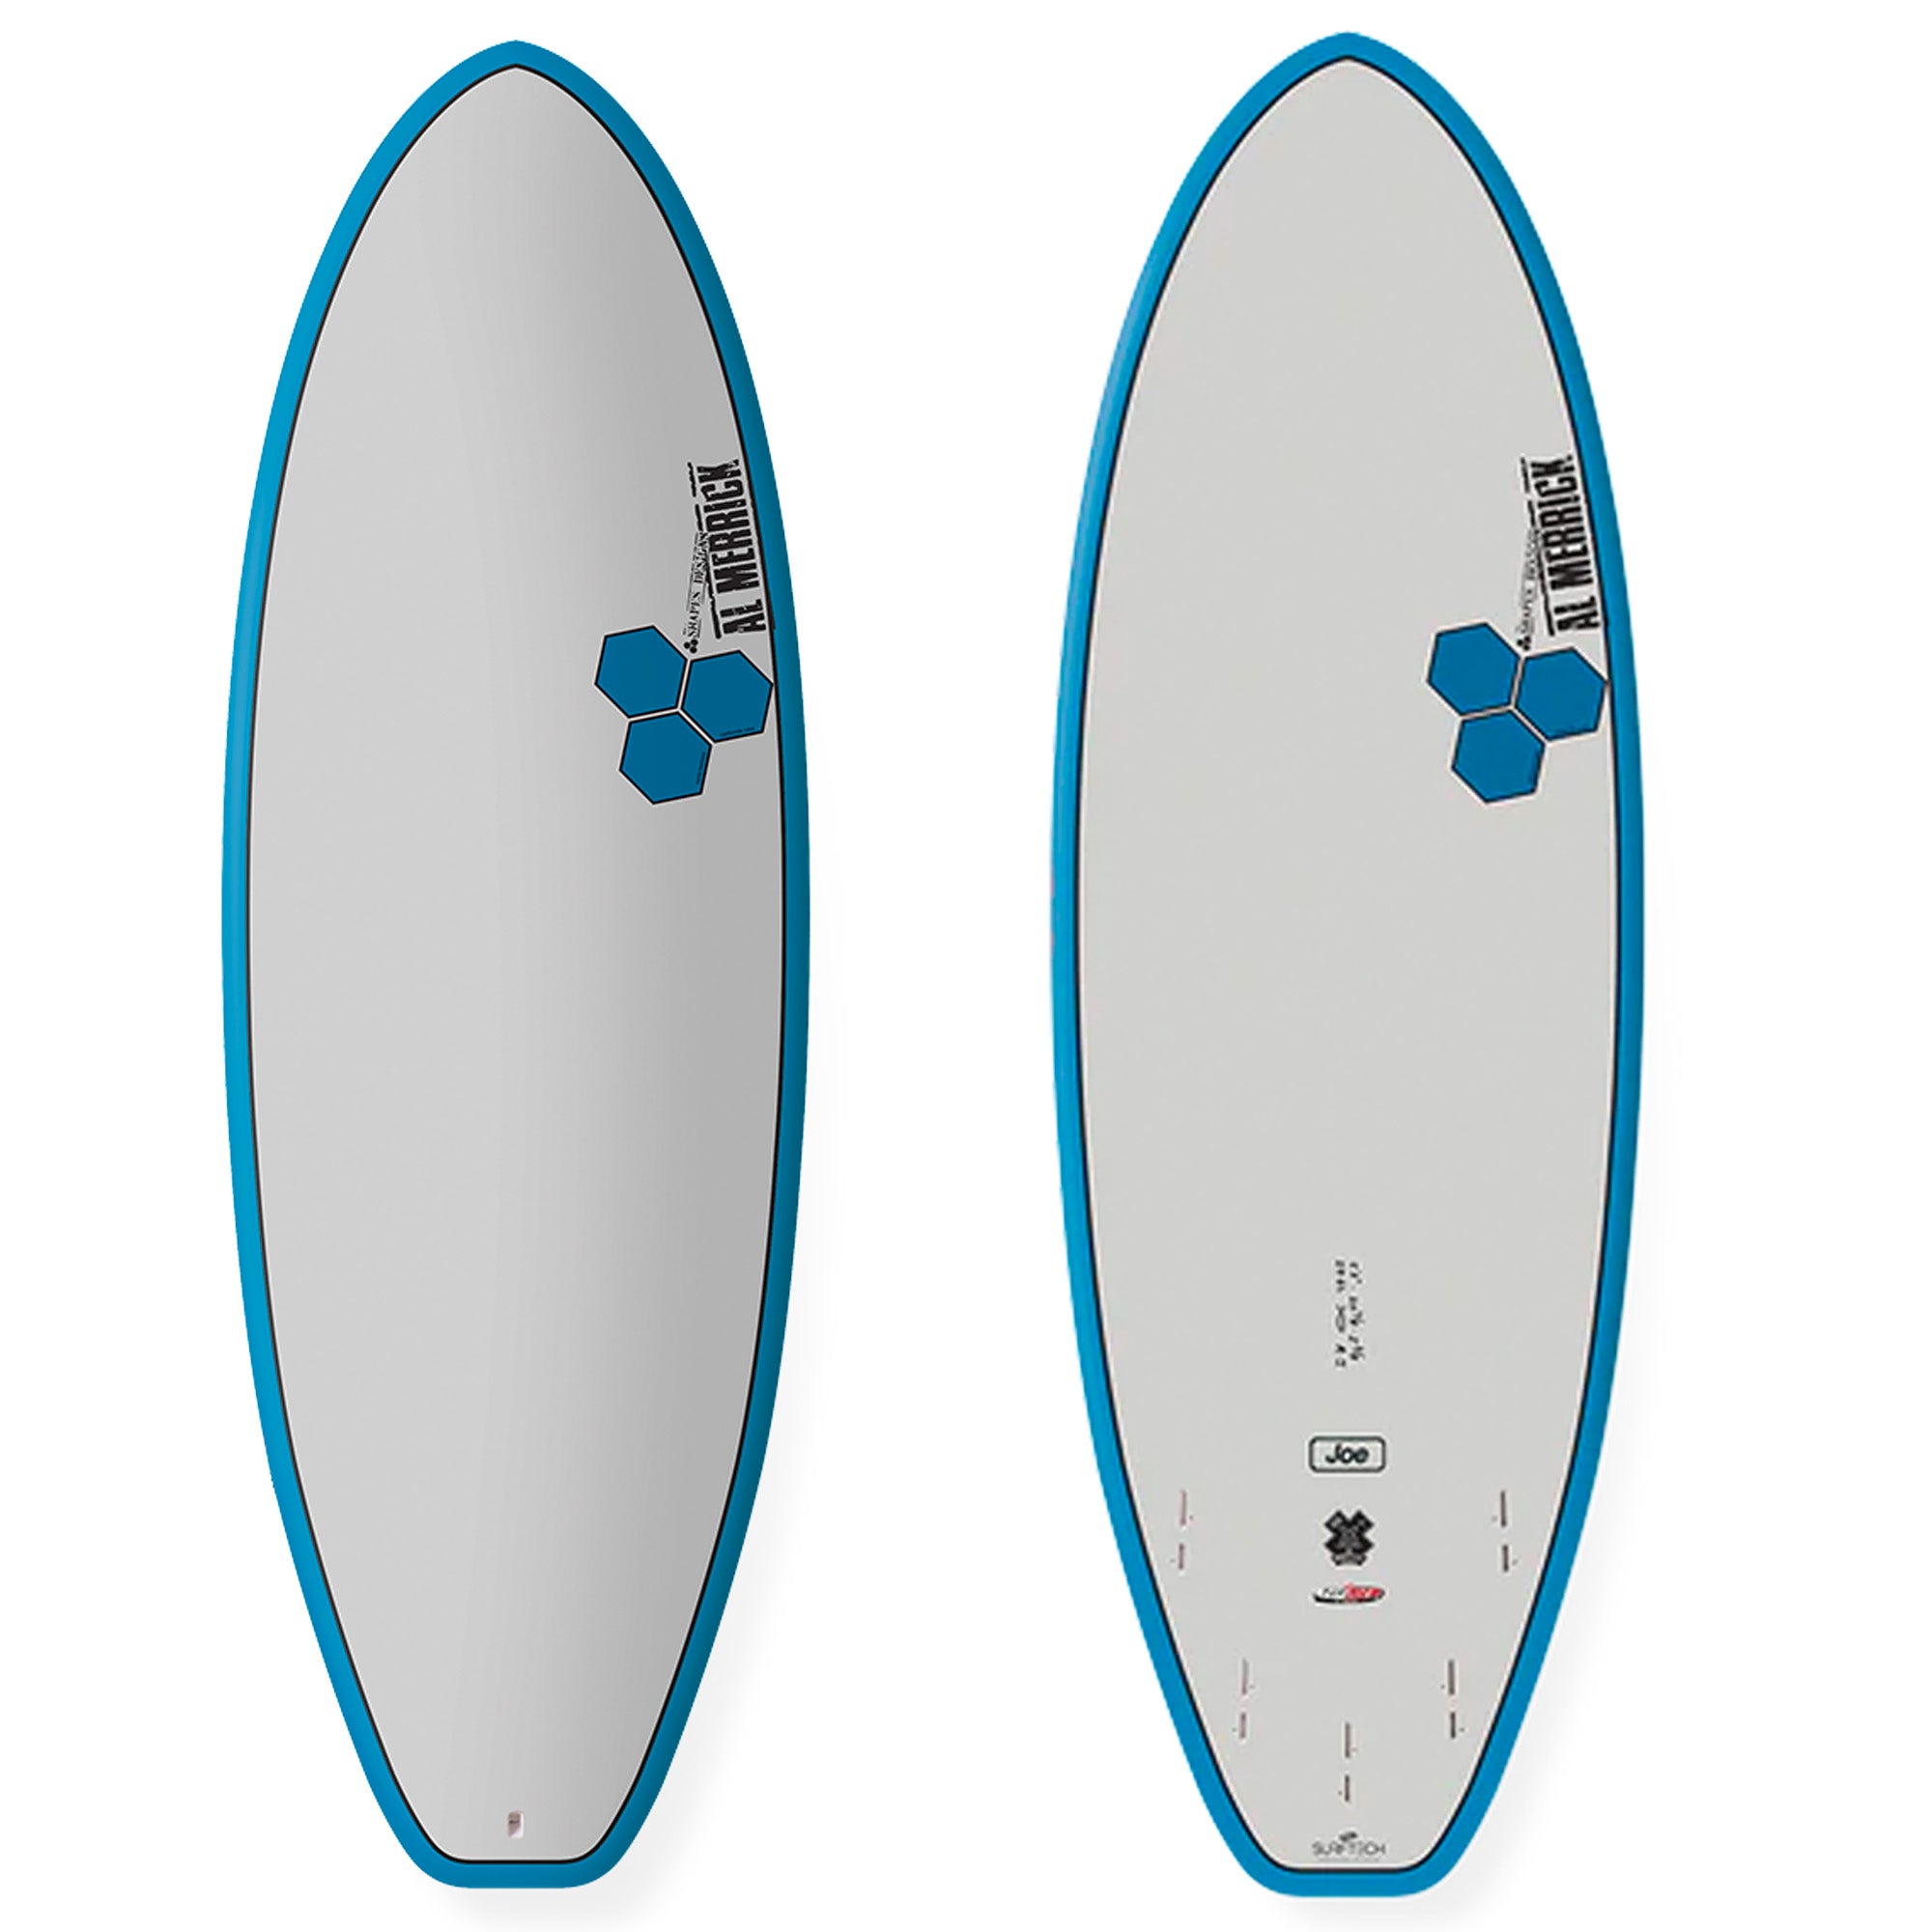 Channel Islands Average Joe Tuflite V-Tech Surfboard